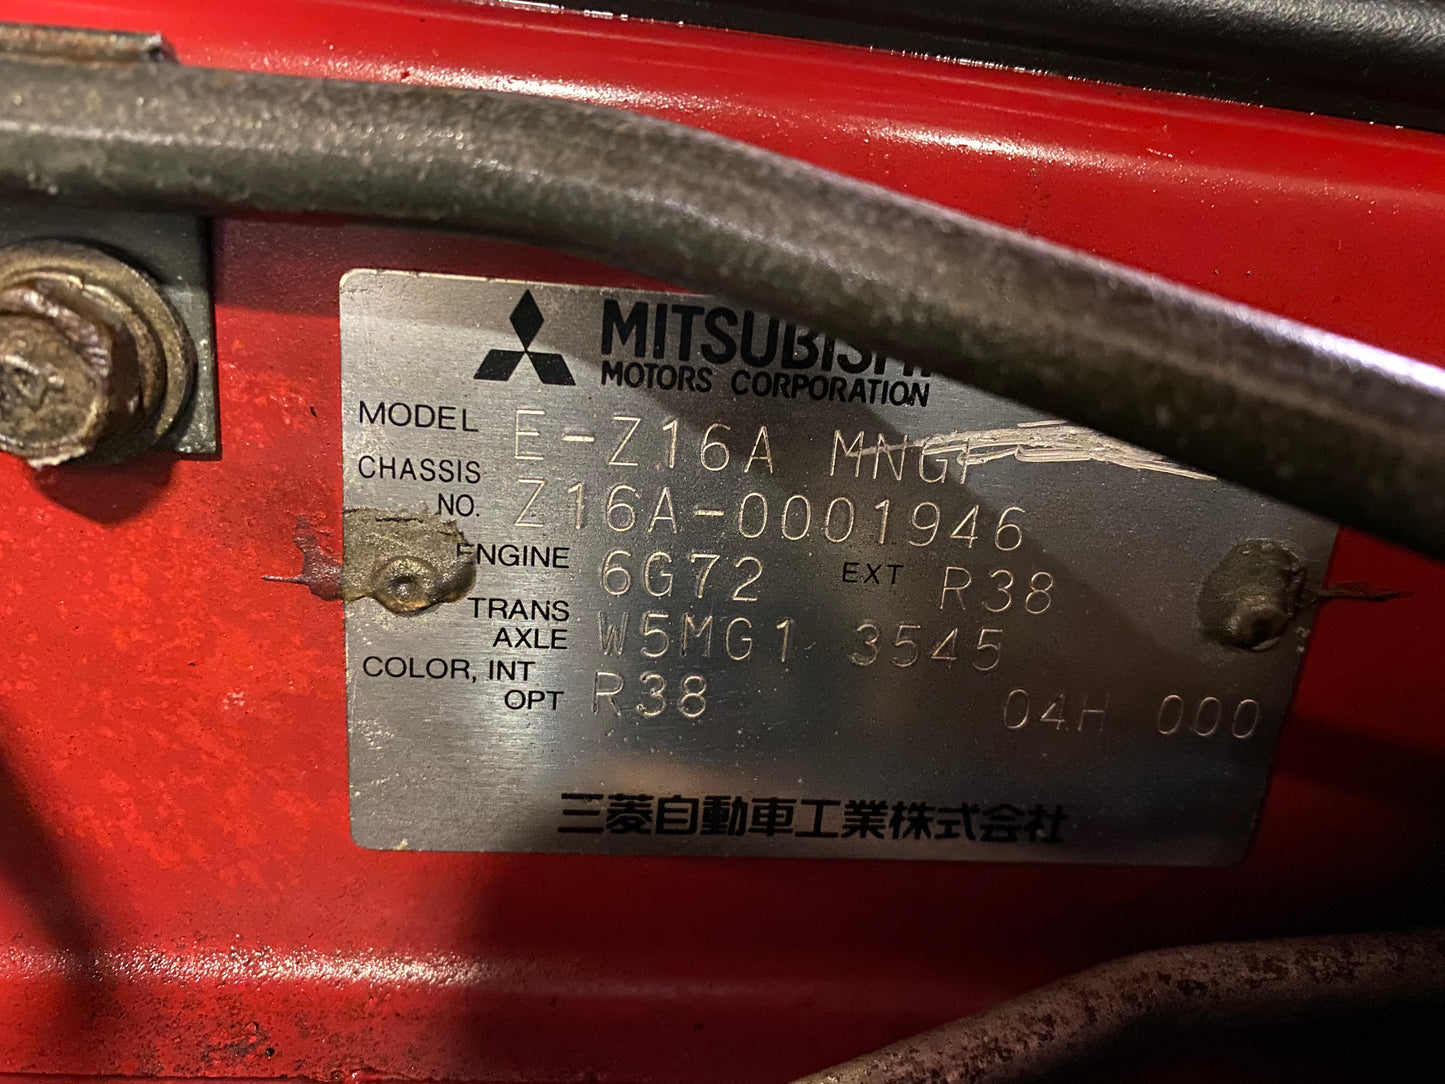 Mitsubishi GTO 1990 Twin Turbo - Factory Manual